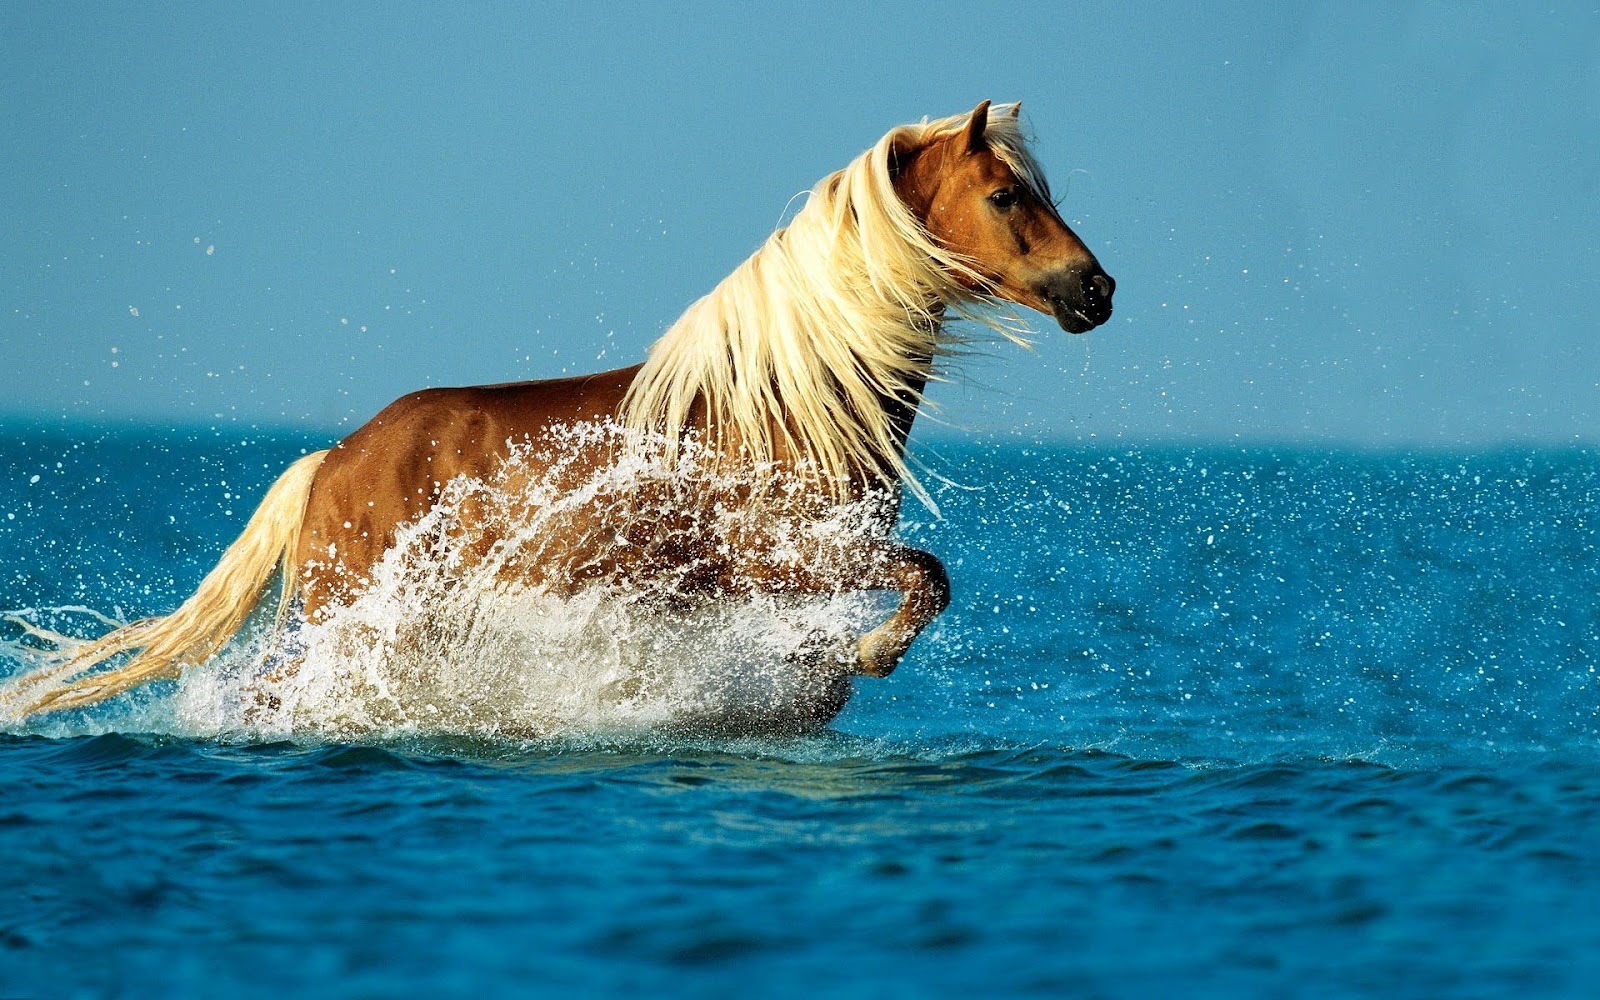 http://1.bp.blogspot.com/-5NdASEjdlz0/UG8_BtD5A9I/AAAAAAAAEGY/w1b_2kwx-ao/s1600/animal-wallpapers-a-horse-running-through-the-sea-hd-horse-wallpaper.jpg